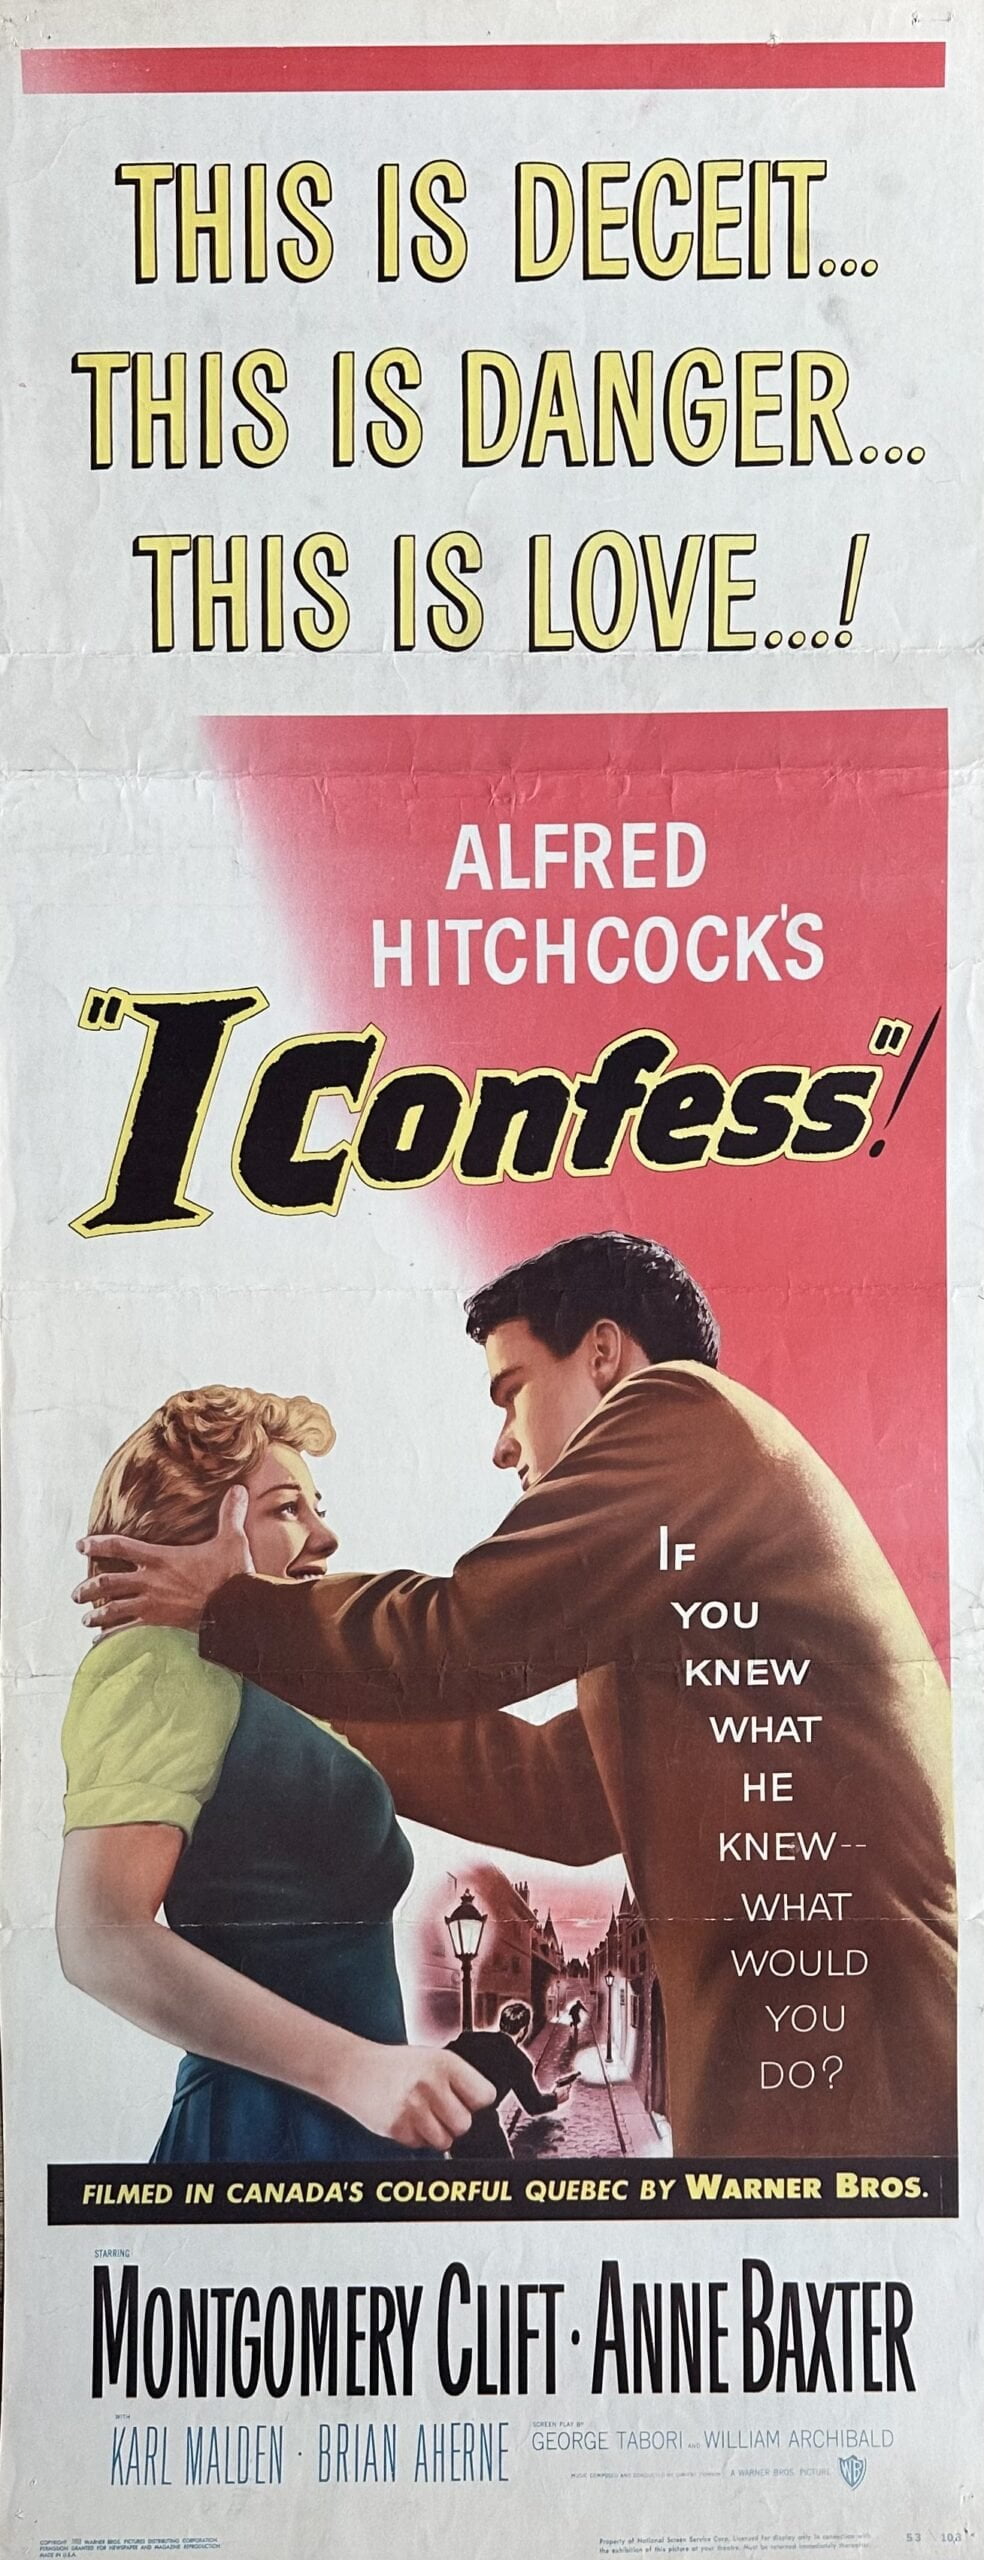 Original vintage cinema movie poster for Hitchcock thriller, I Confess